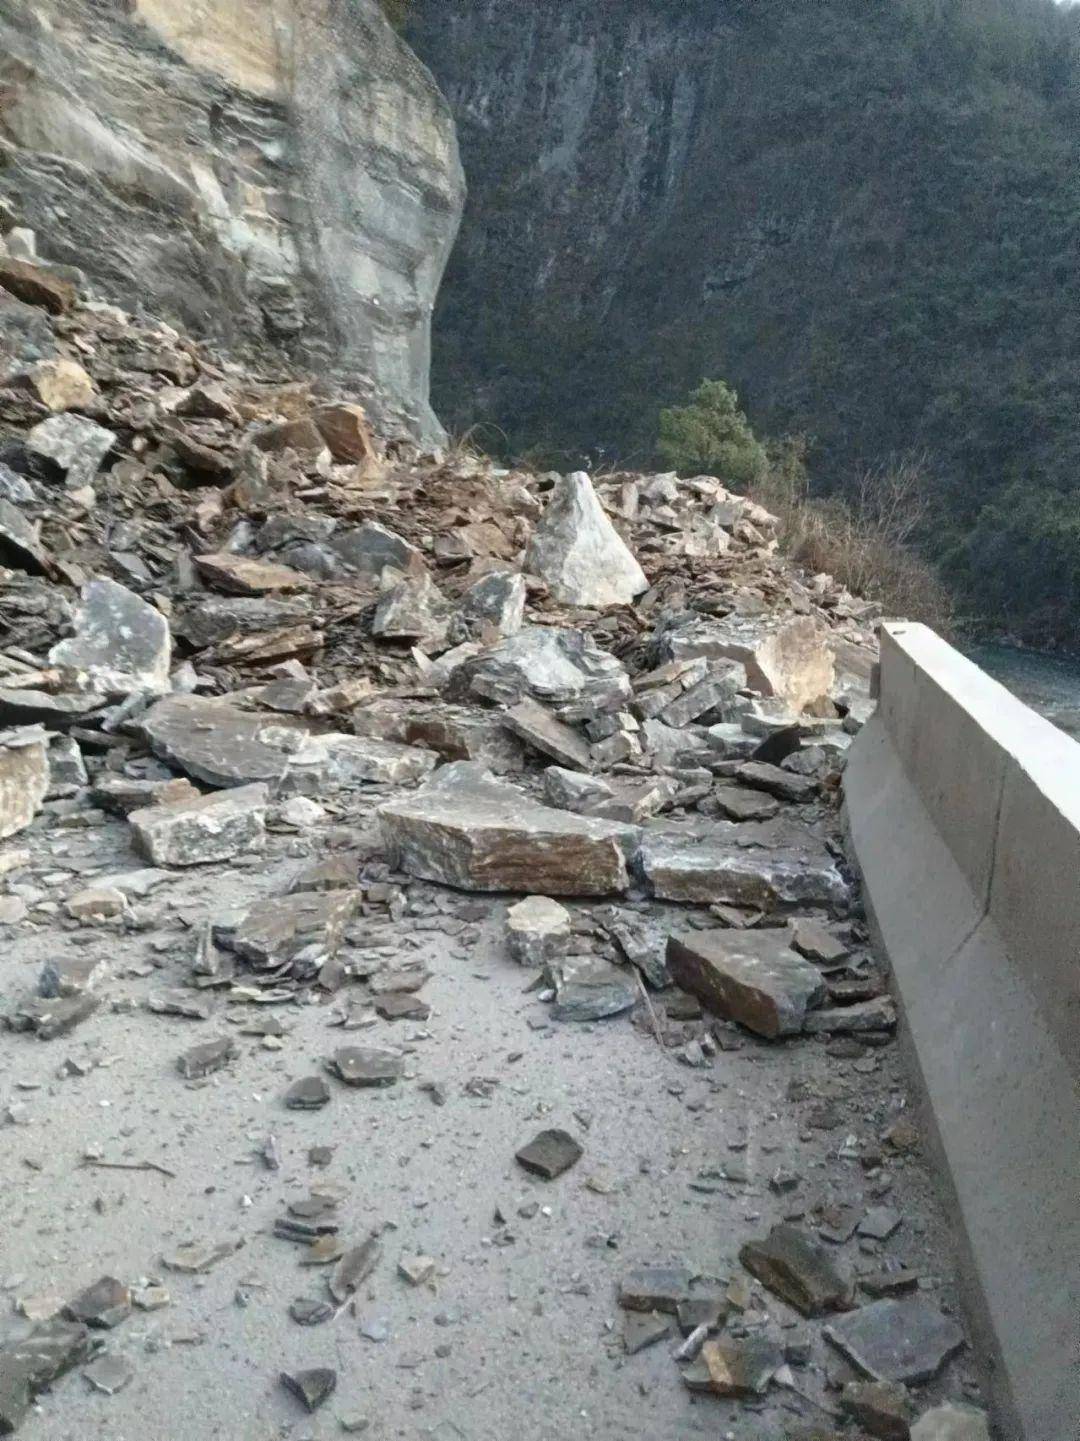 掌上张家界讯 2月16日,桑植县g353国道陈家河三漤子路段发生山体滑坡